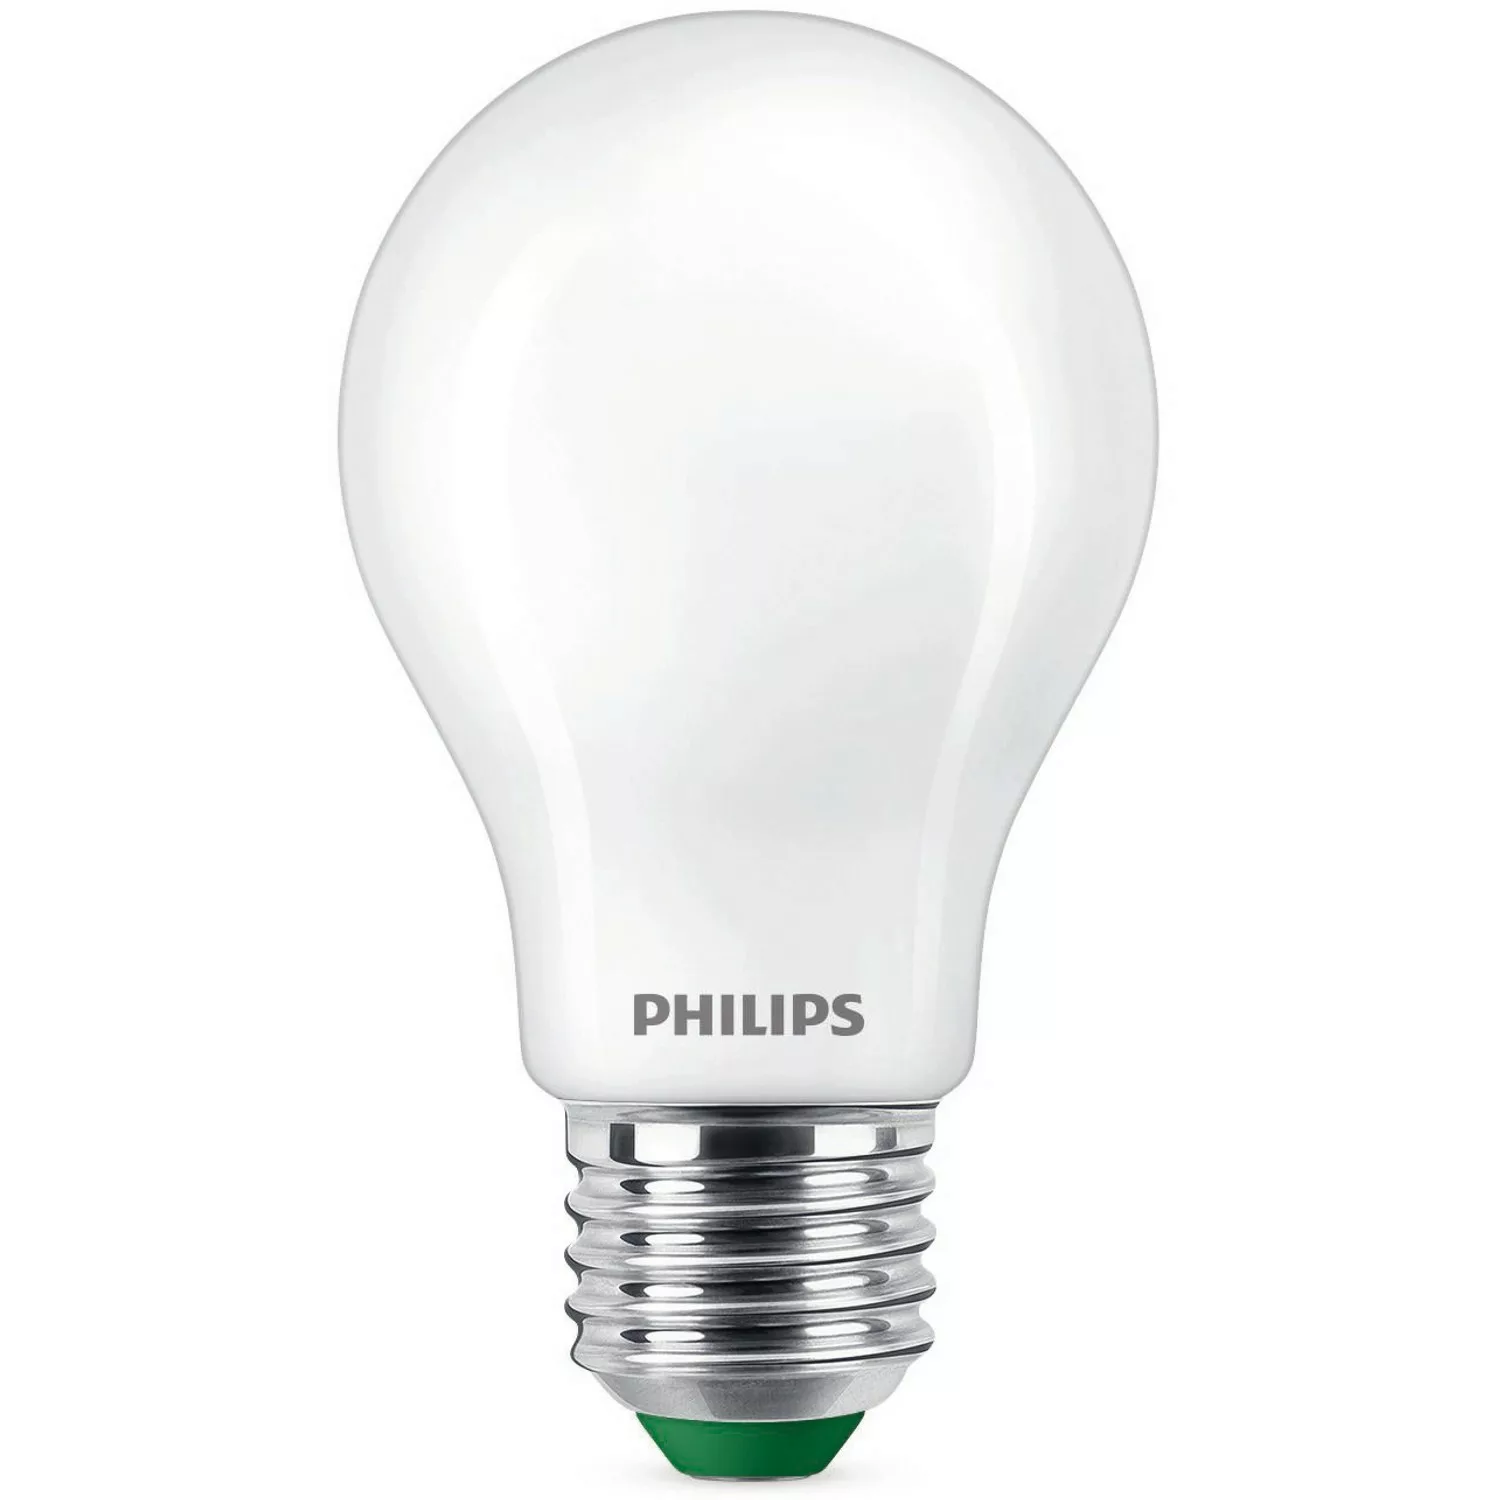 Philips LED-Leuchtmittel E27 Glühlampenform 7,3W 1535lm Matt Warmweiß 10,5x günstig online kaufen